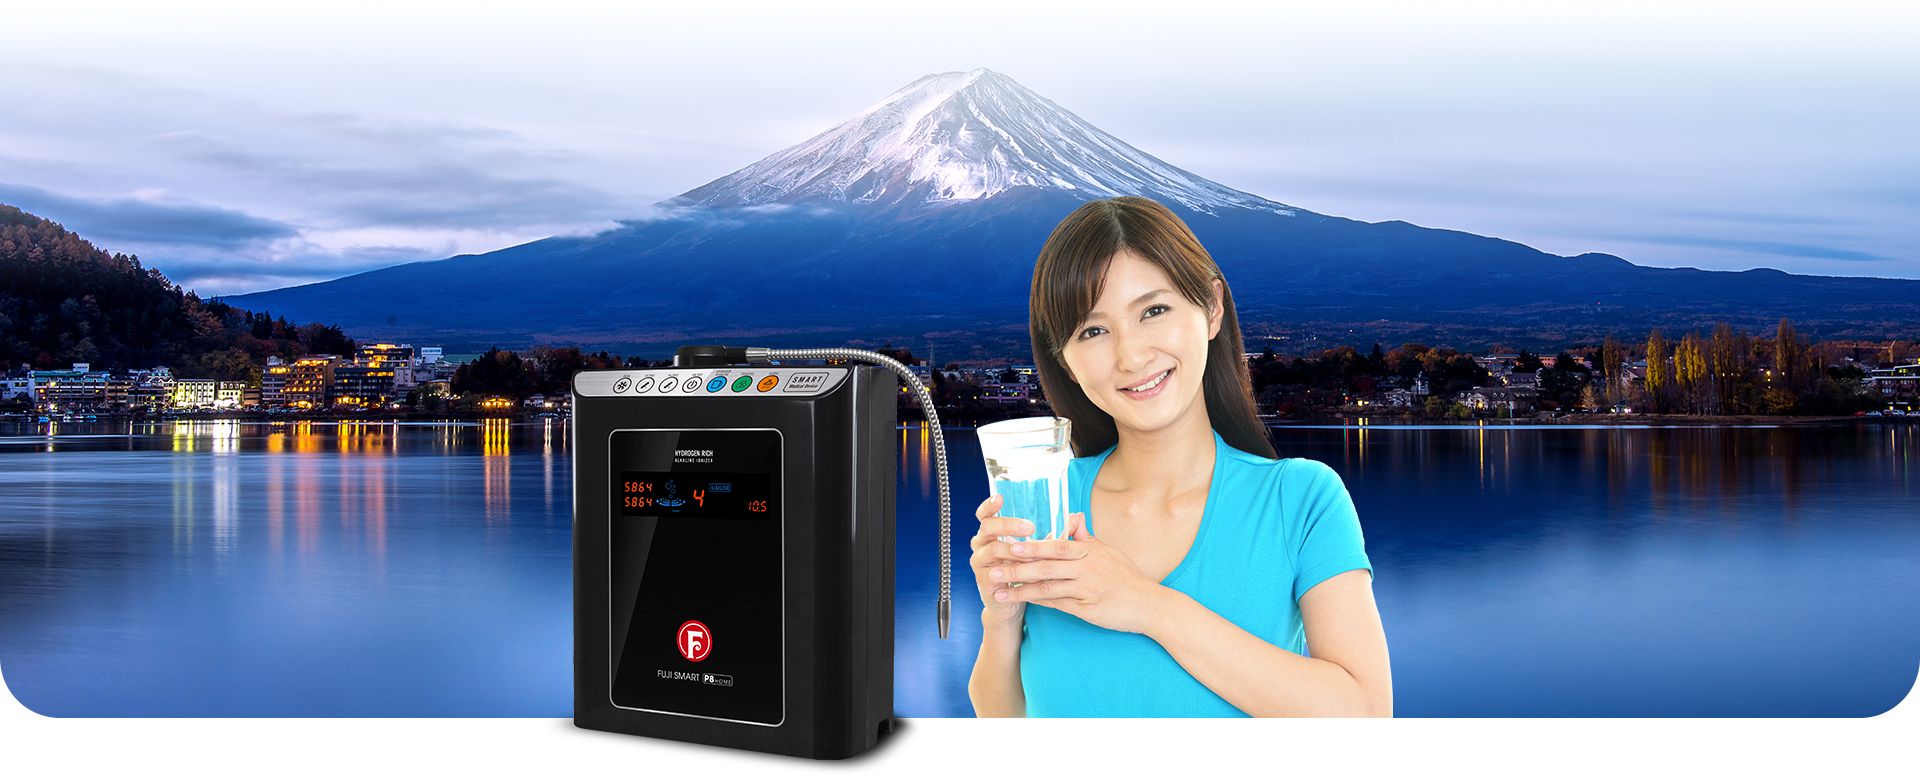 [BÁO VNEXPRESS.NET] Fuji Smart P8 Home và mục tiêu xã hội hóa máy lọc nước ion kiềm